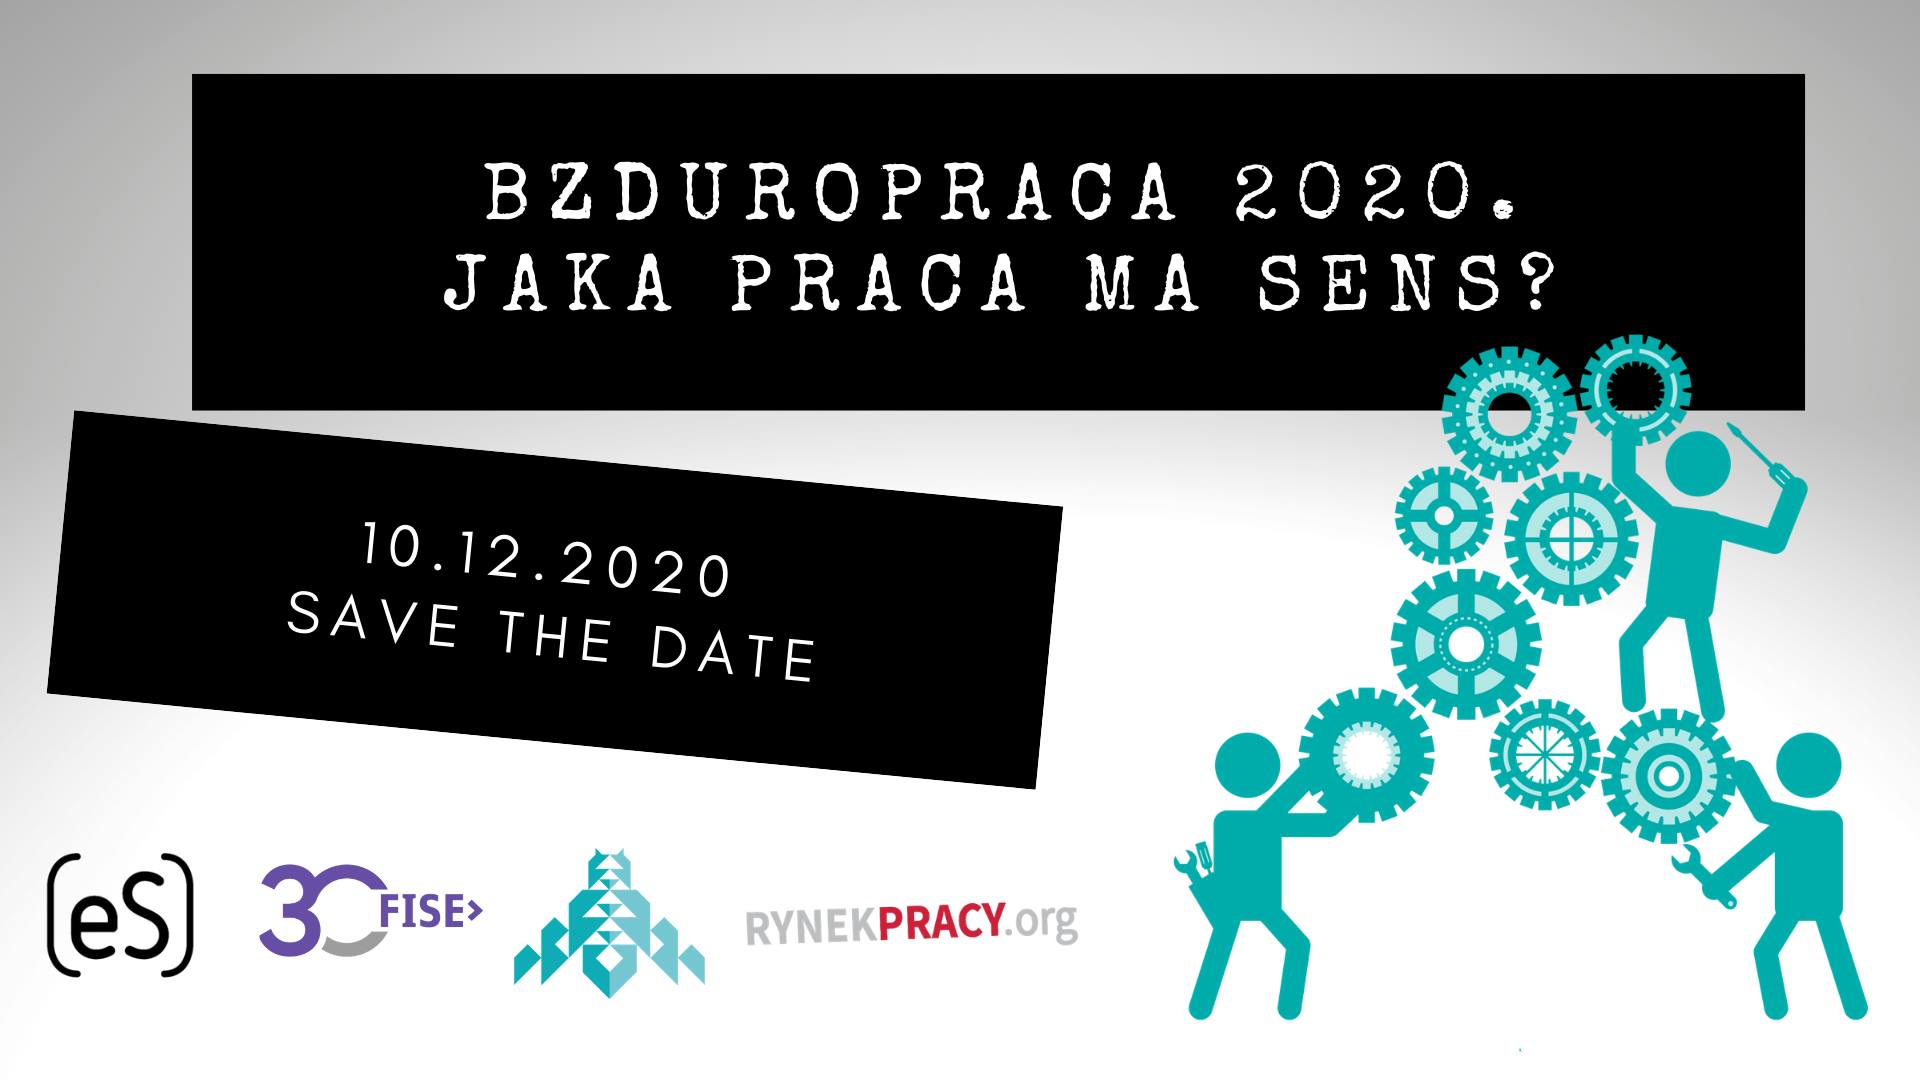 You are currently viewing Bzduropraca 2020 – jaka praca ma sens?